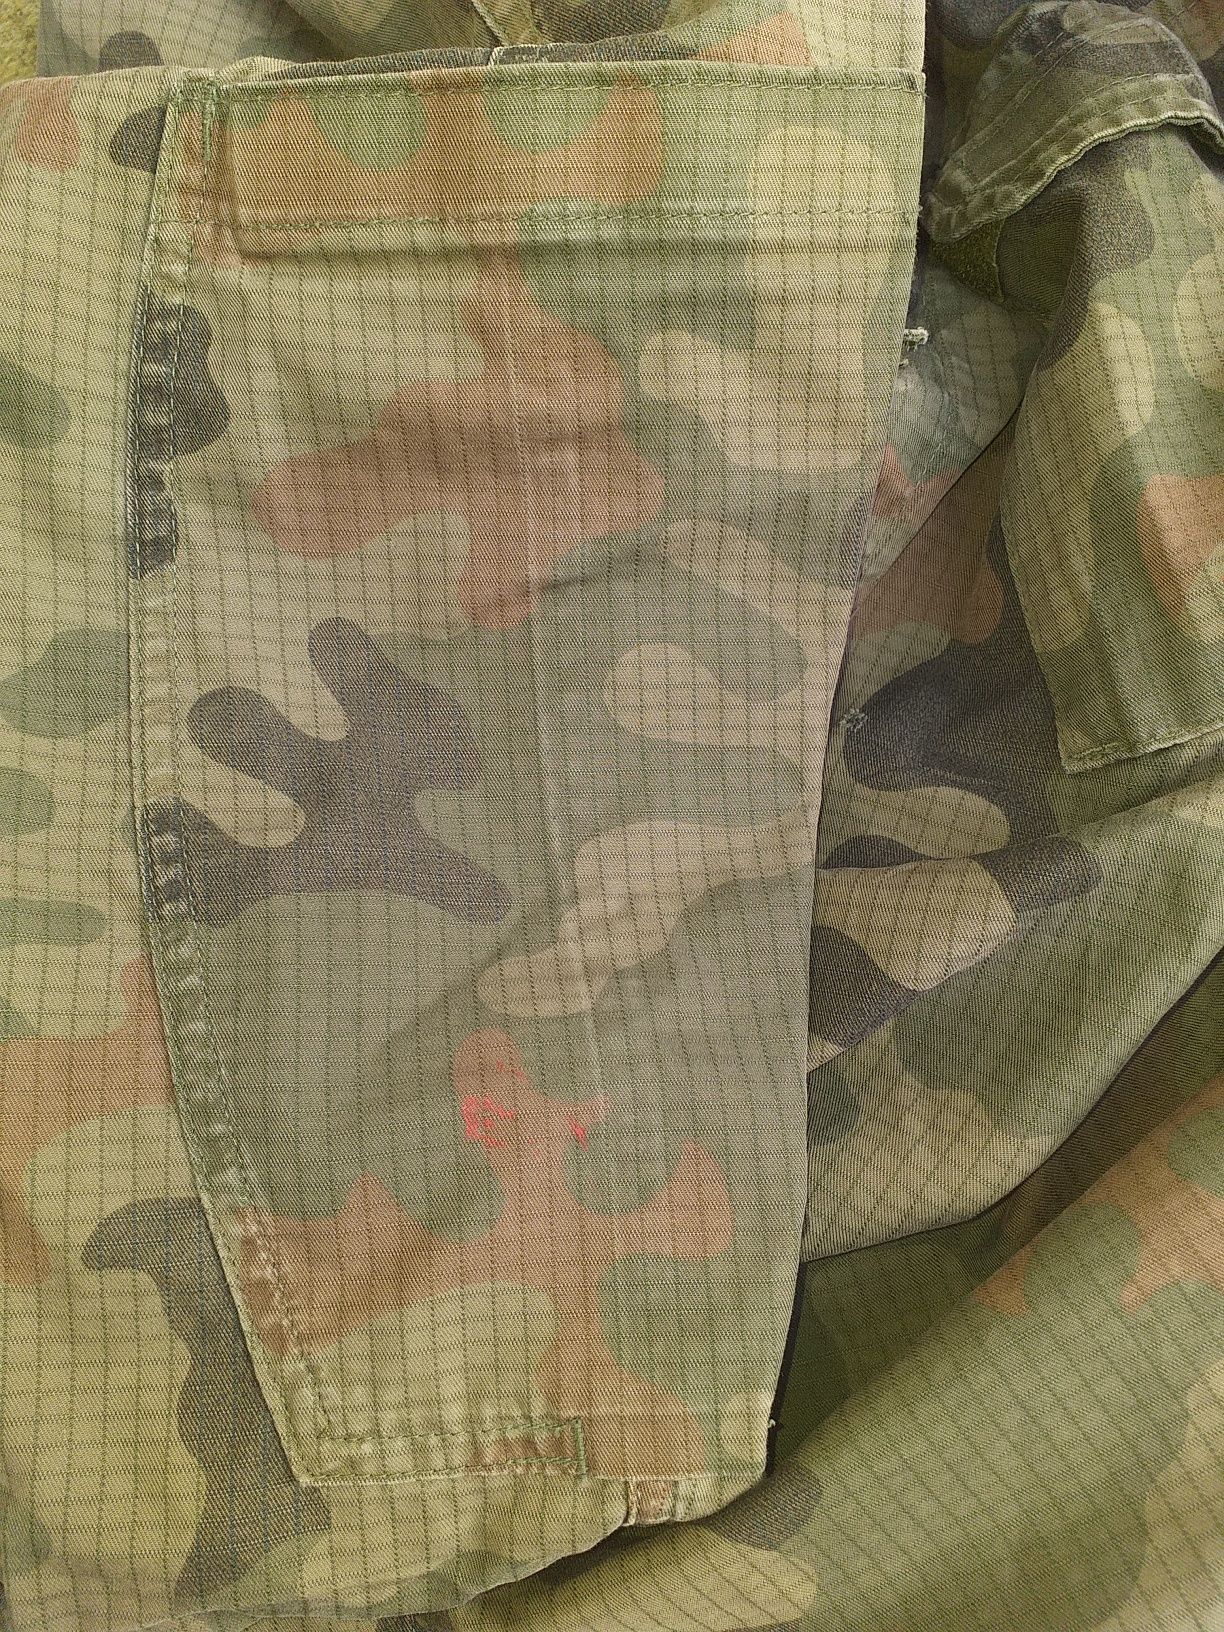 Bluza polowa wojskowa wz.123/MON,militaria,ASG,Paintball, WP,demobil